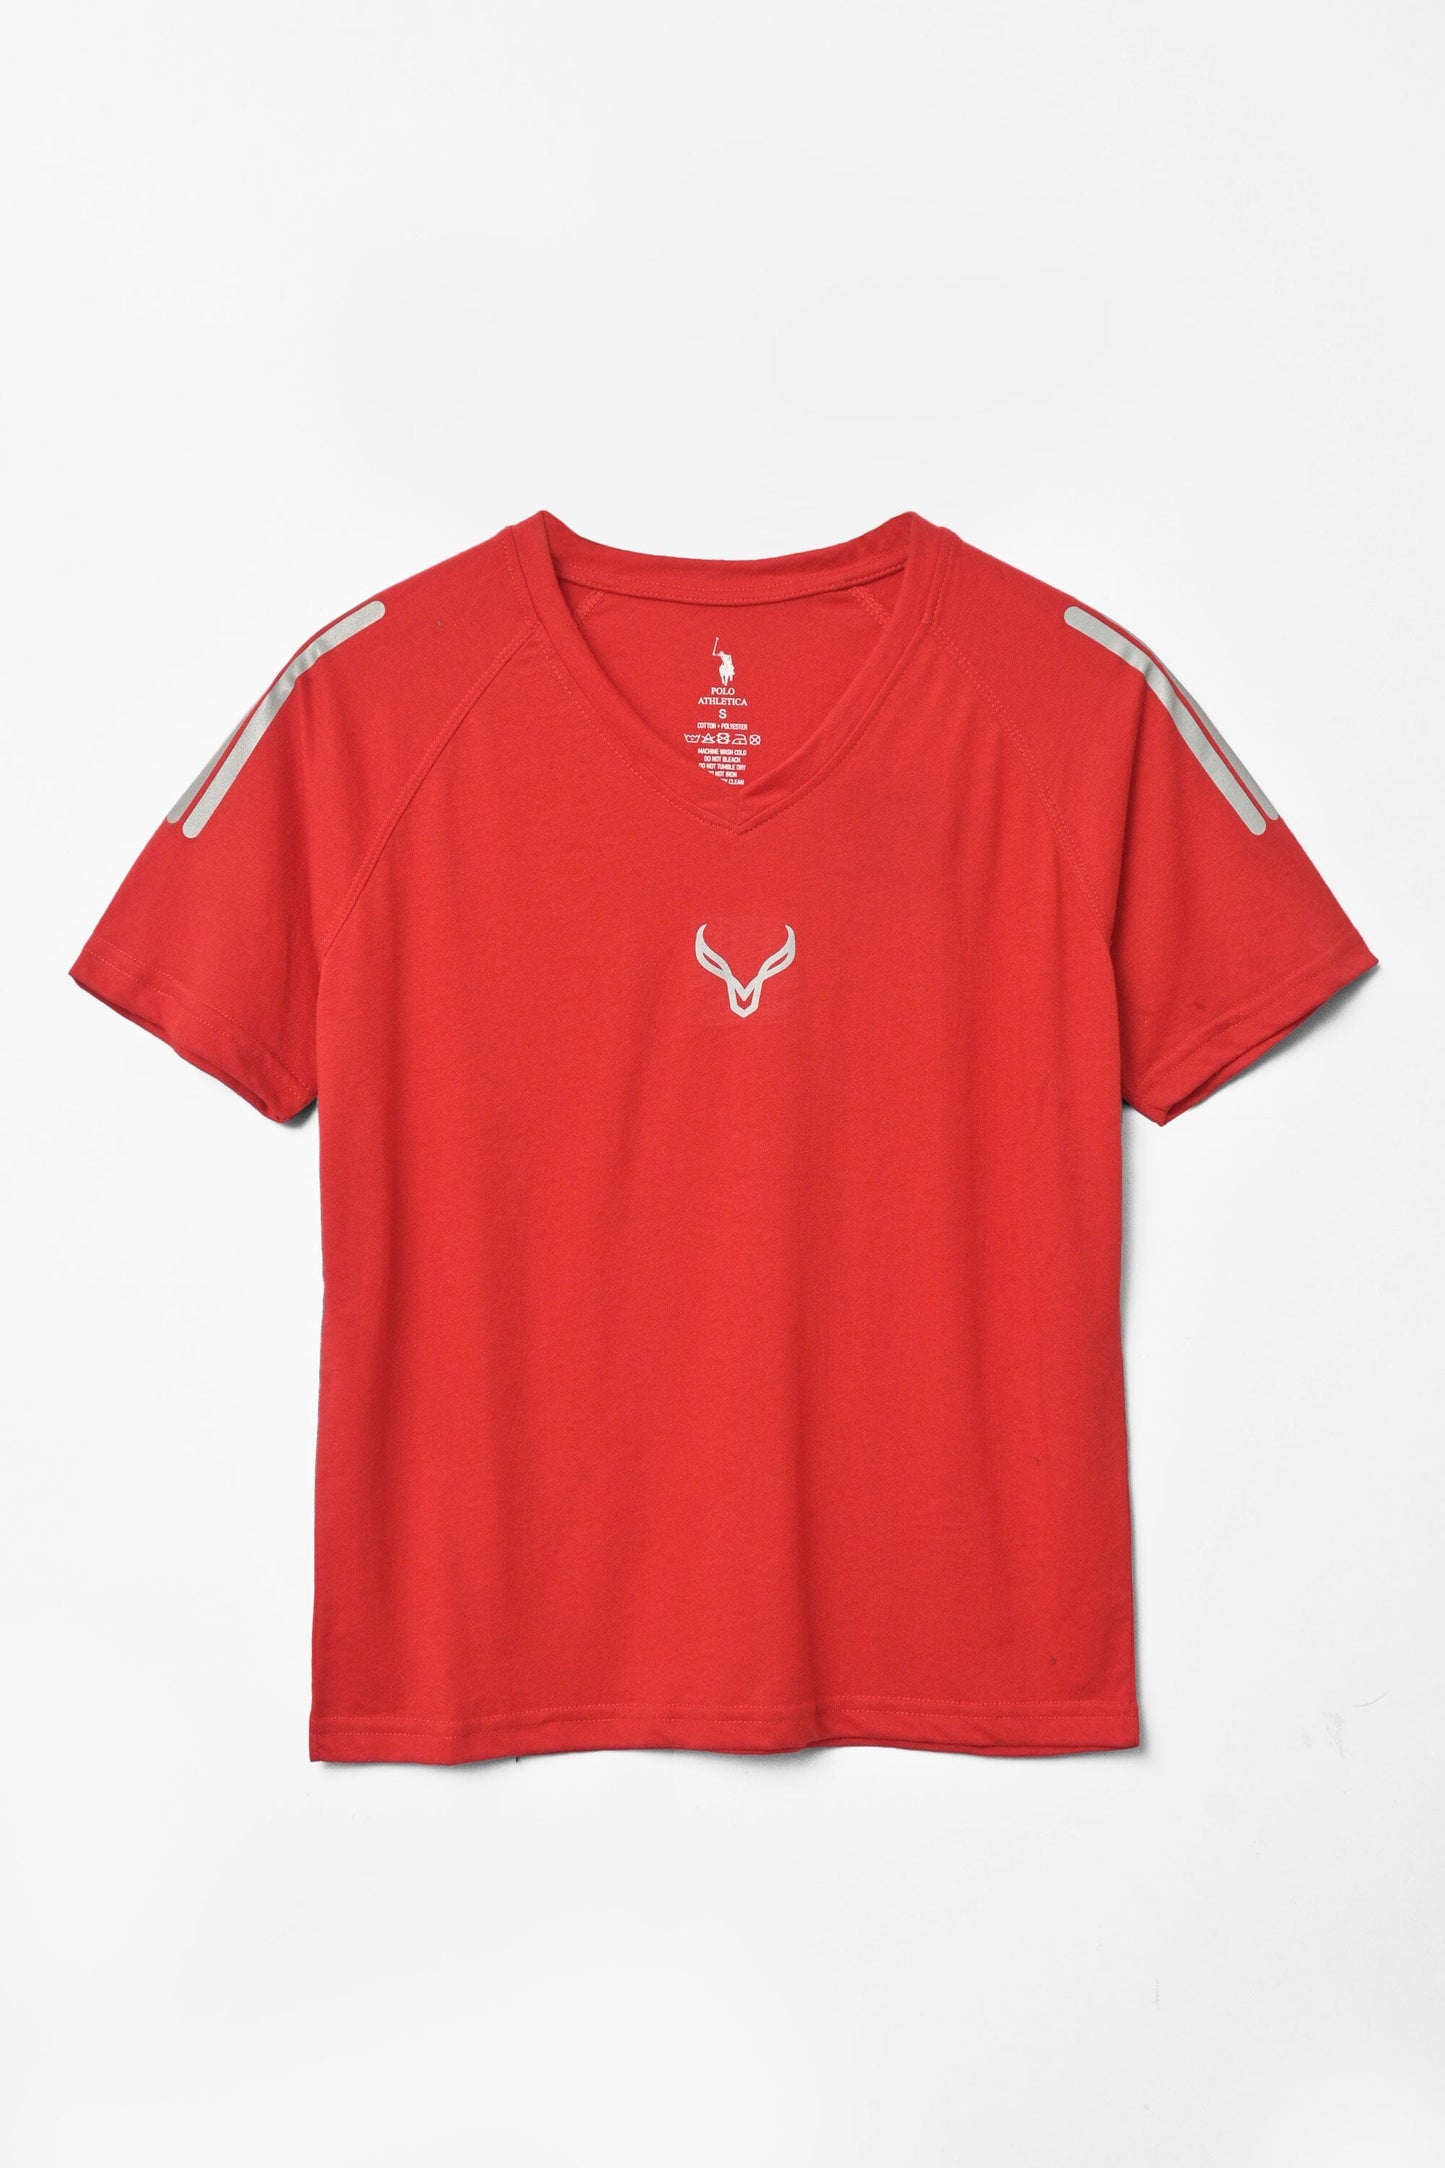 Polo Athletica Women's V-Neck Logo Reflector Short Sleeve Tee Shirt